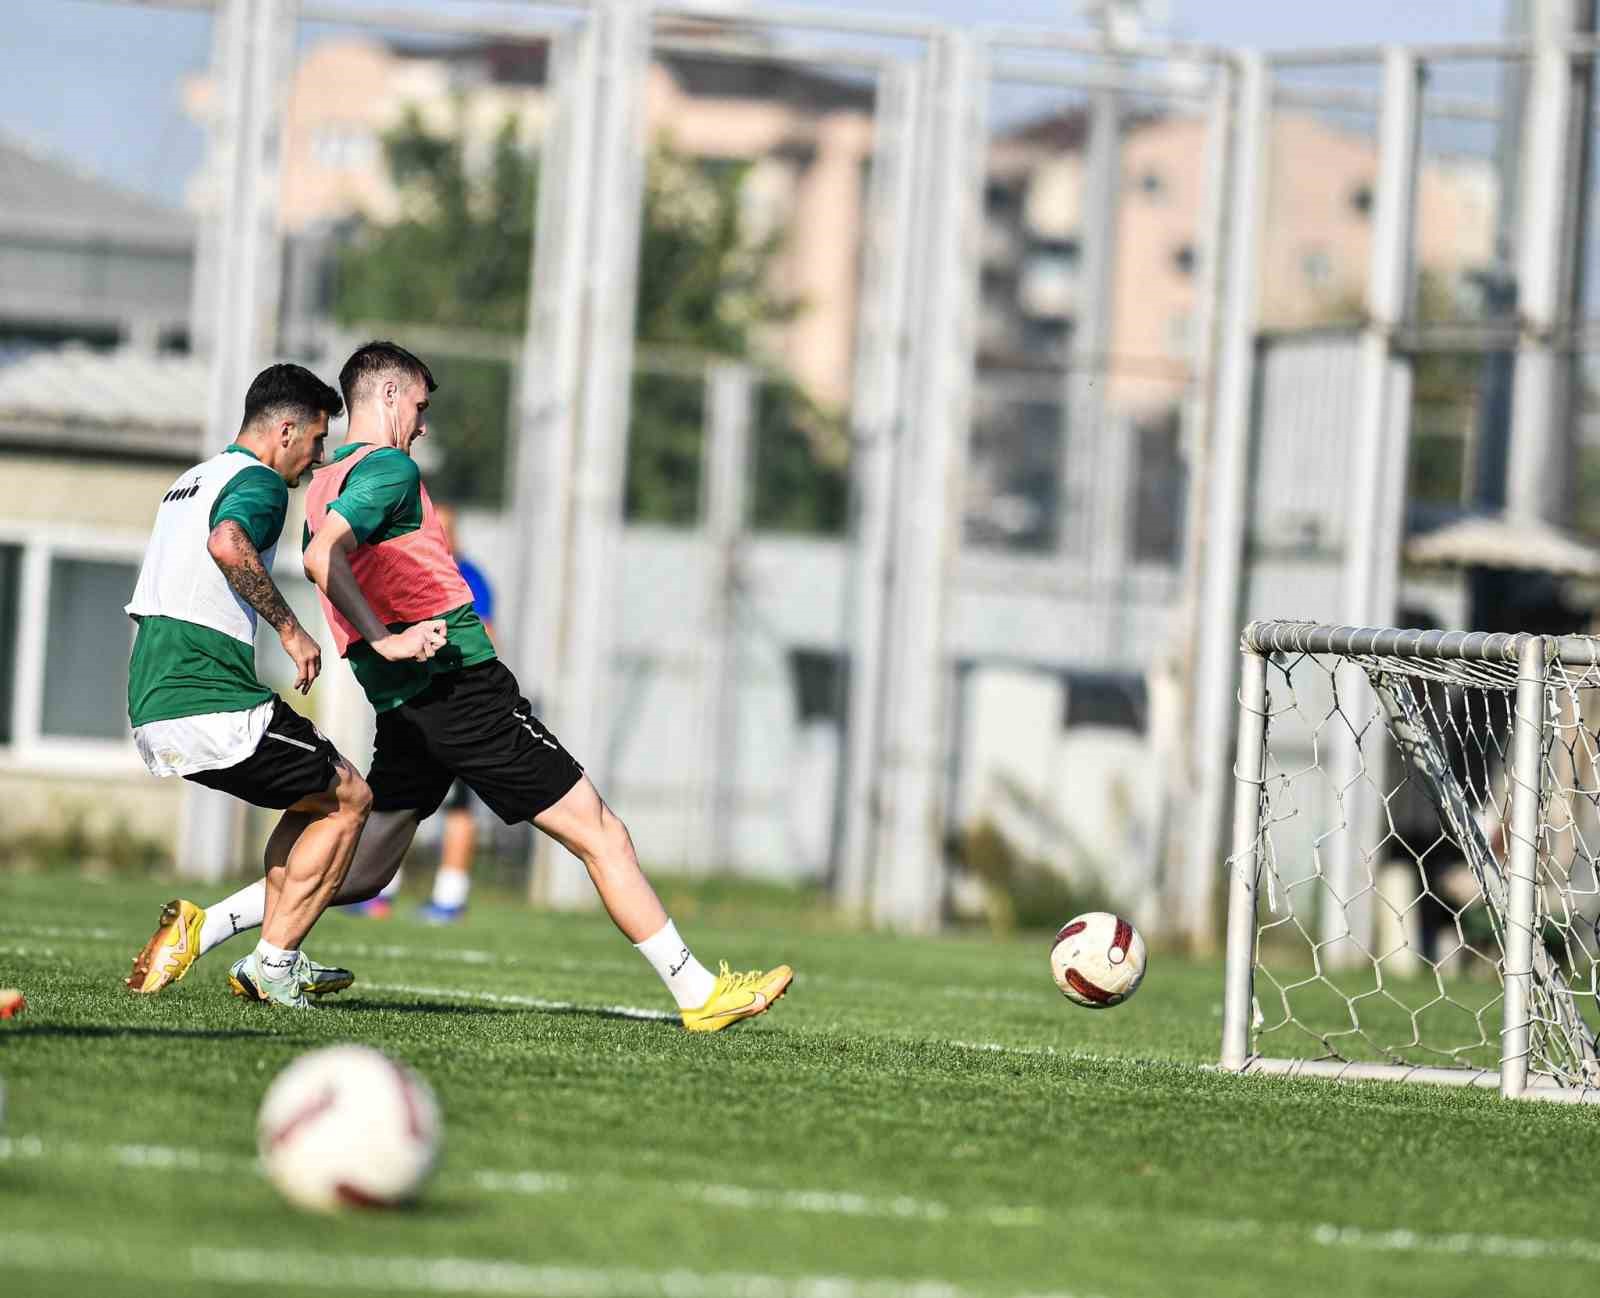 Bursaspor’da, Kırklarelispor maçı hazırlıkları başladı